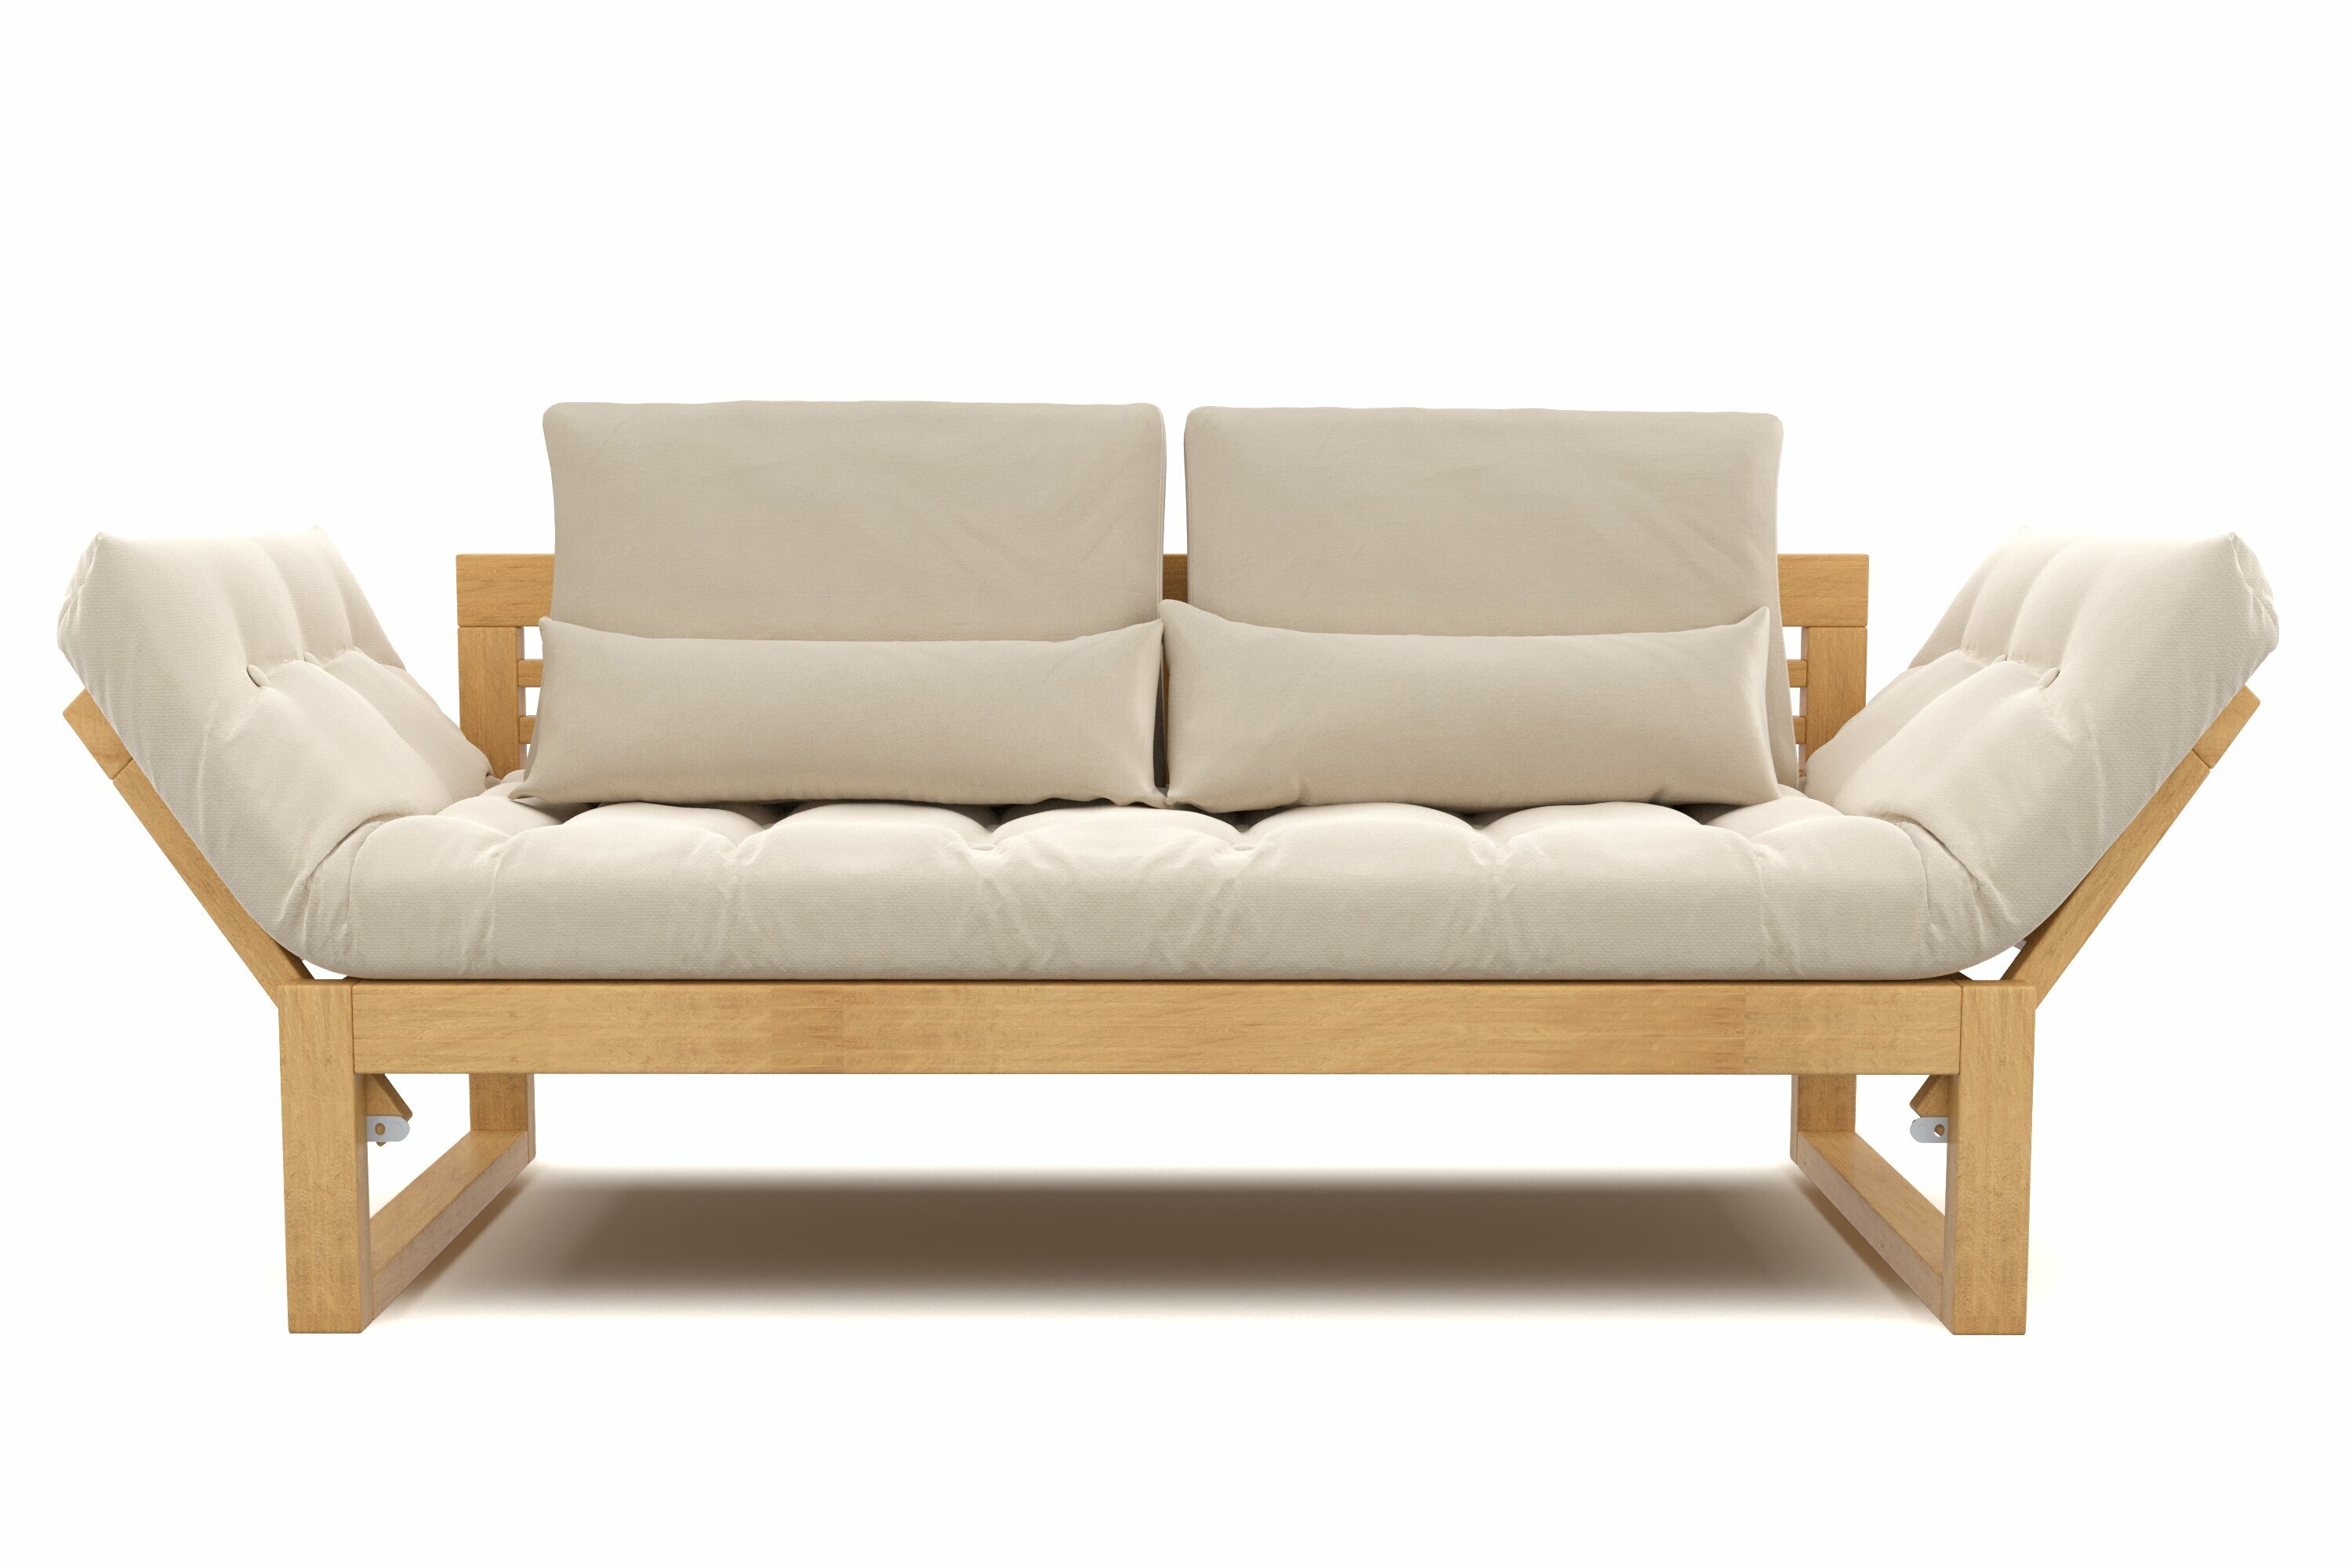 Садовый диван кушетка Soft Element Бьерк, бежевый, массив дерева, раскладной, с подушками, рогожка, на террасу, на веранду, для дачи, для бани - фотография № 13